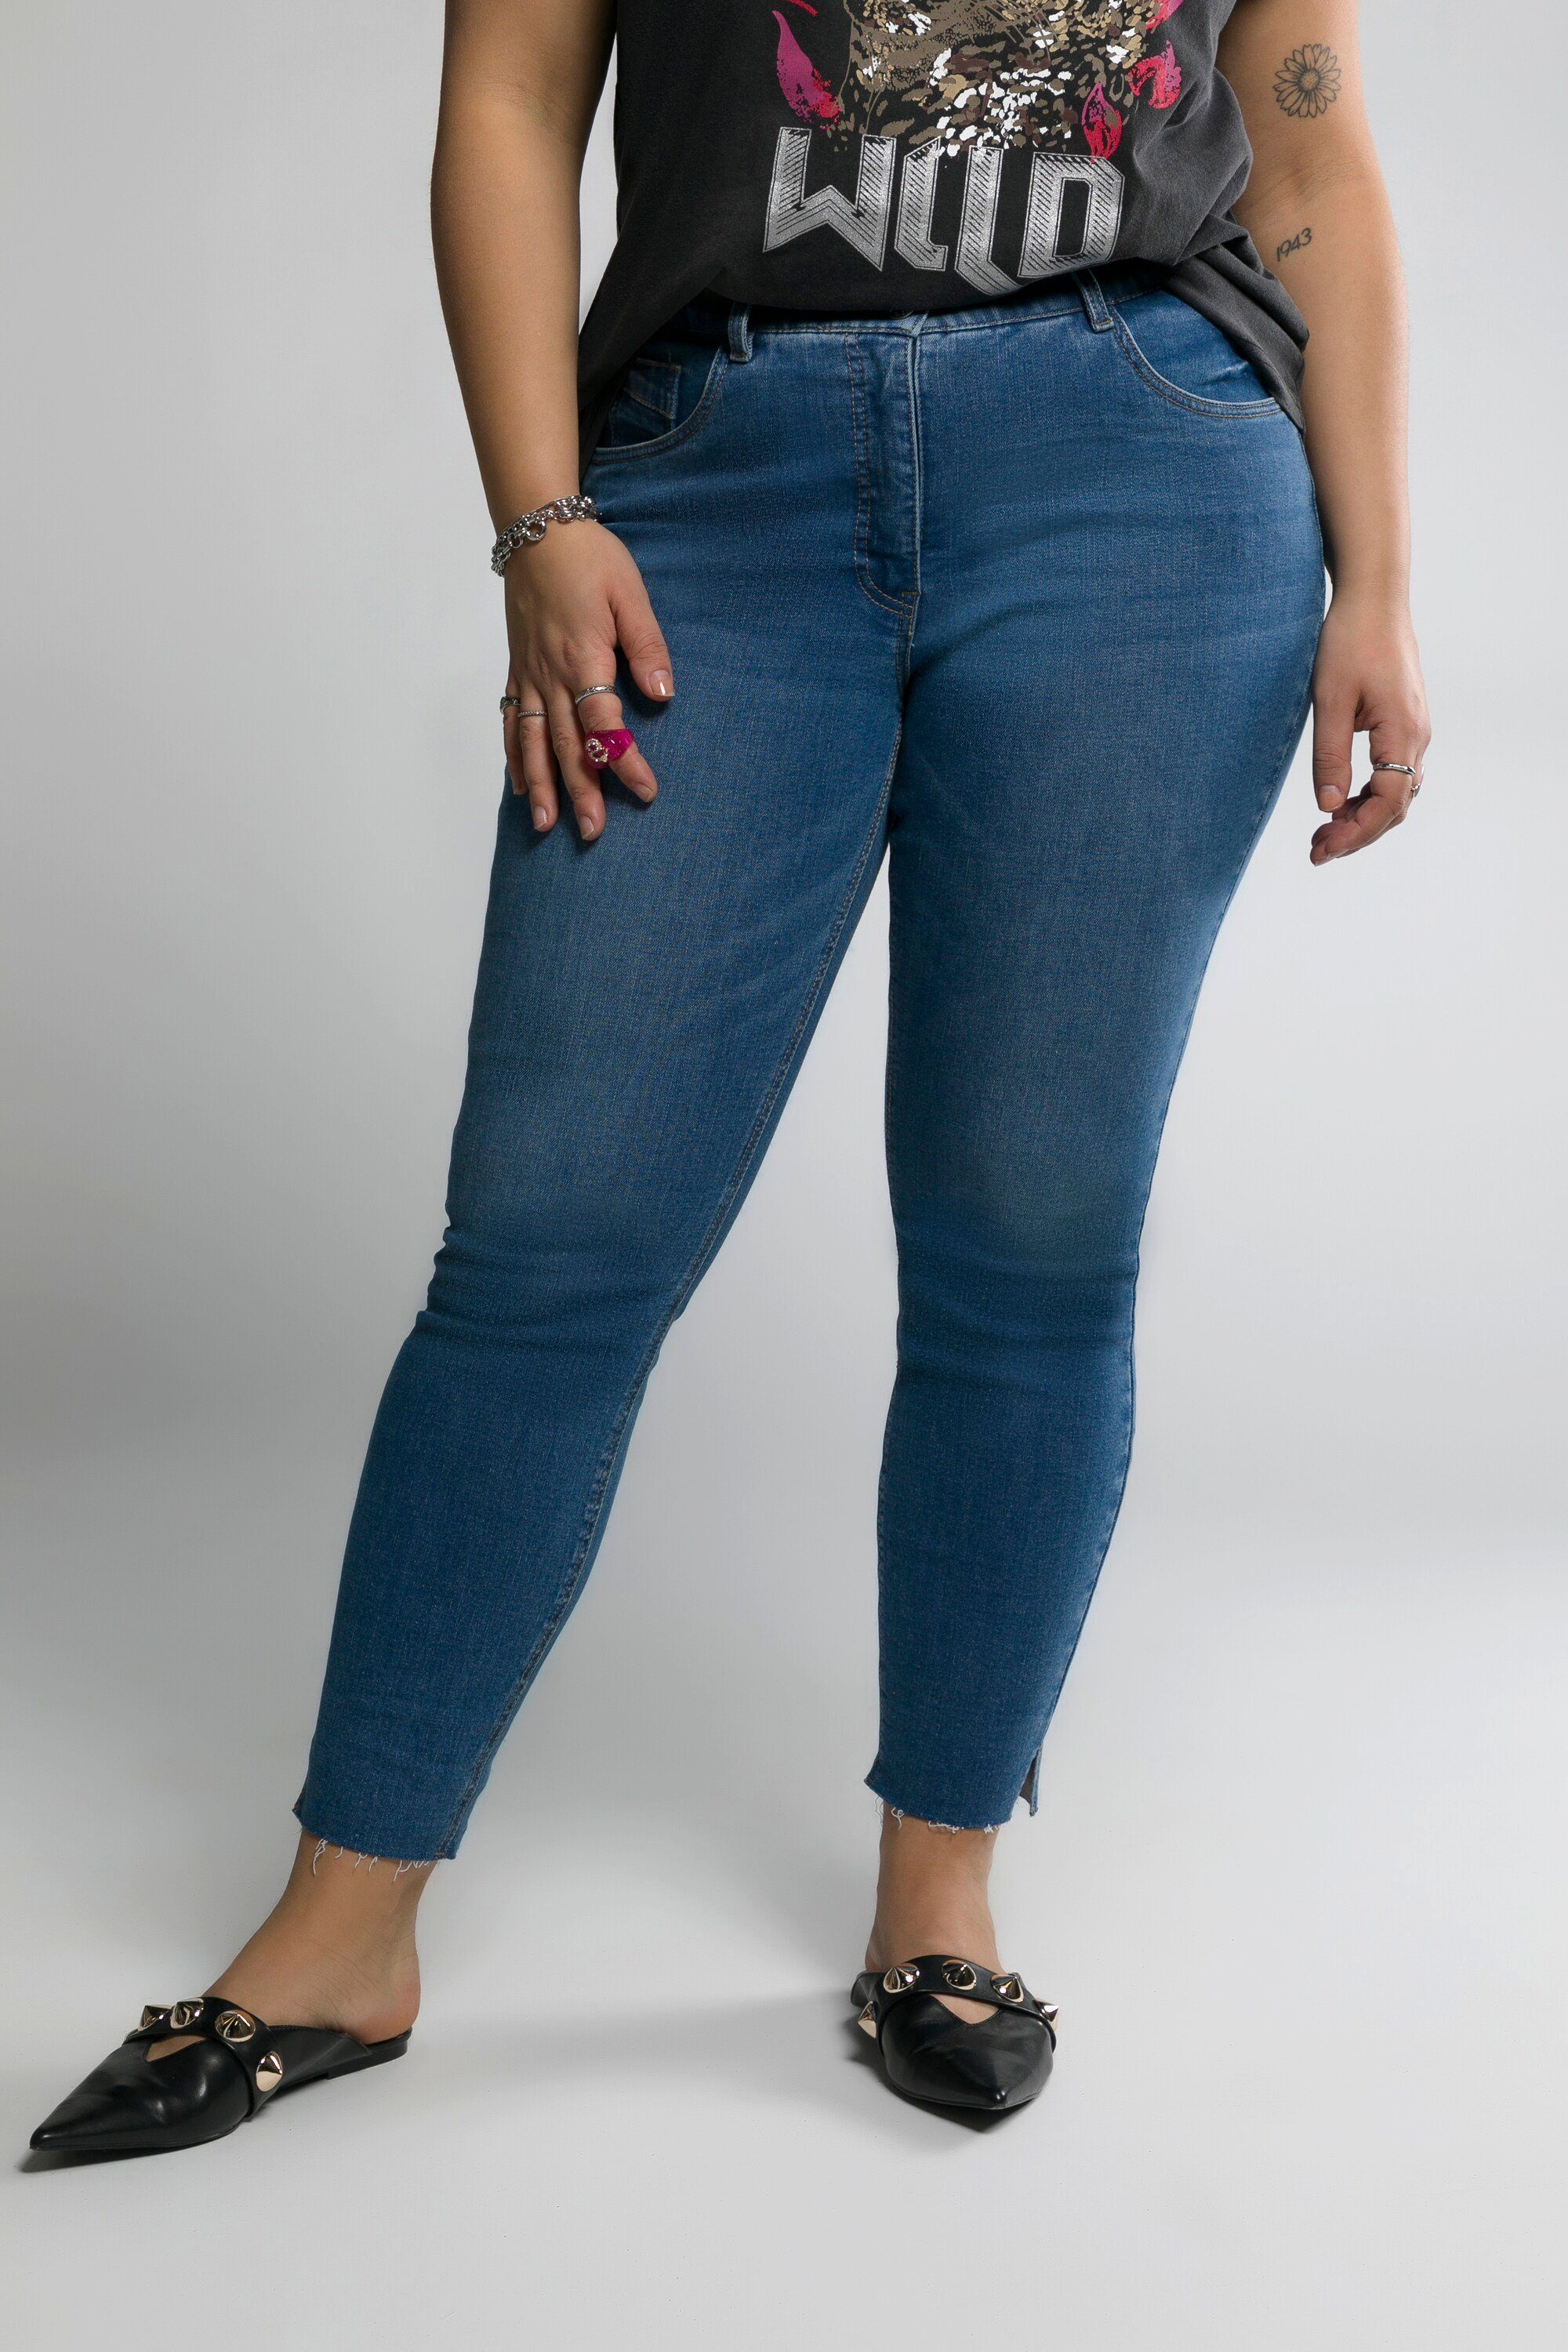 Studio Untold Schlupfhose Skinny Jeans schmal 5-Pocket Fransensaum Schlitz blue denim